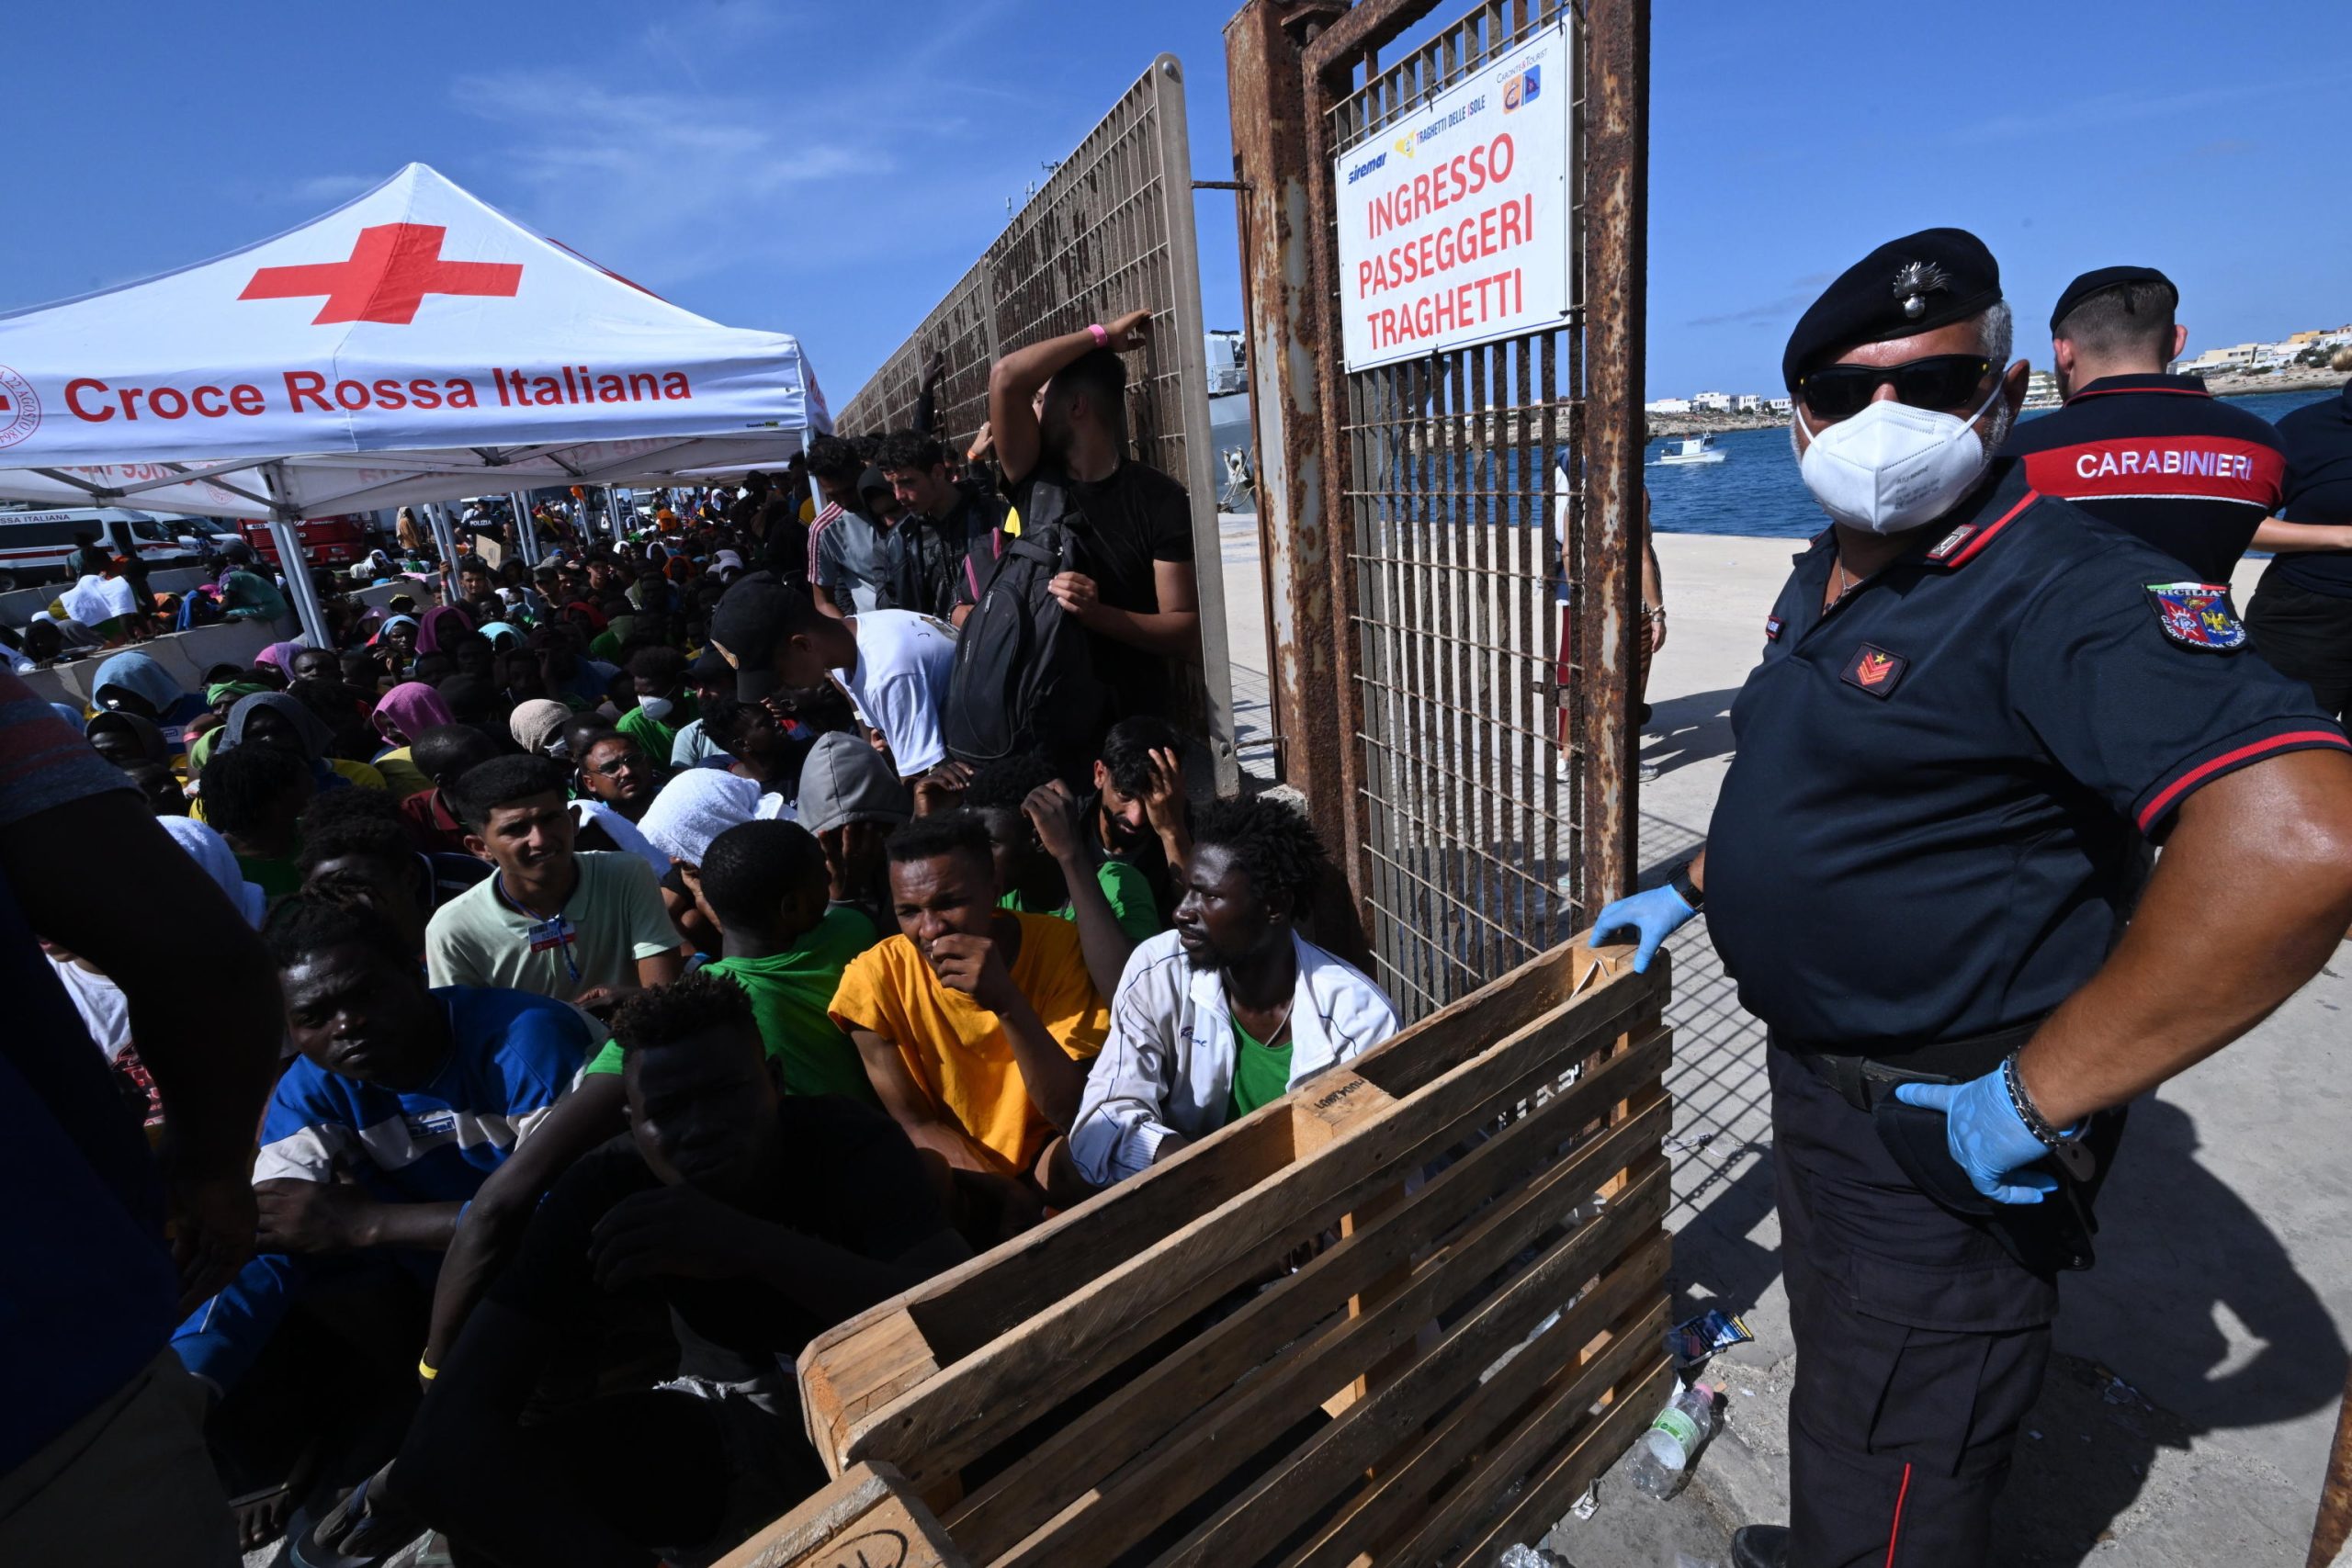 La Croce Rossa e la polizia si occupano di gestire i migranti arrivati all'hotspot di Lampedusa